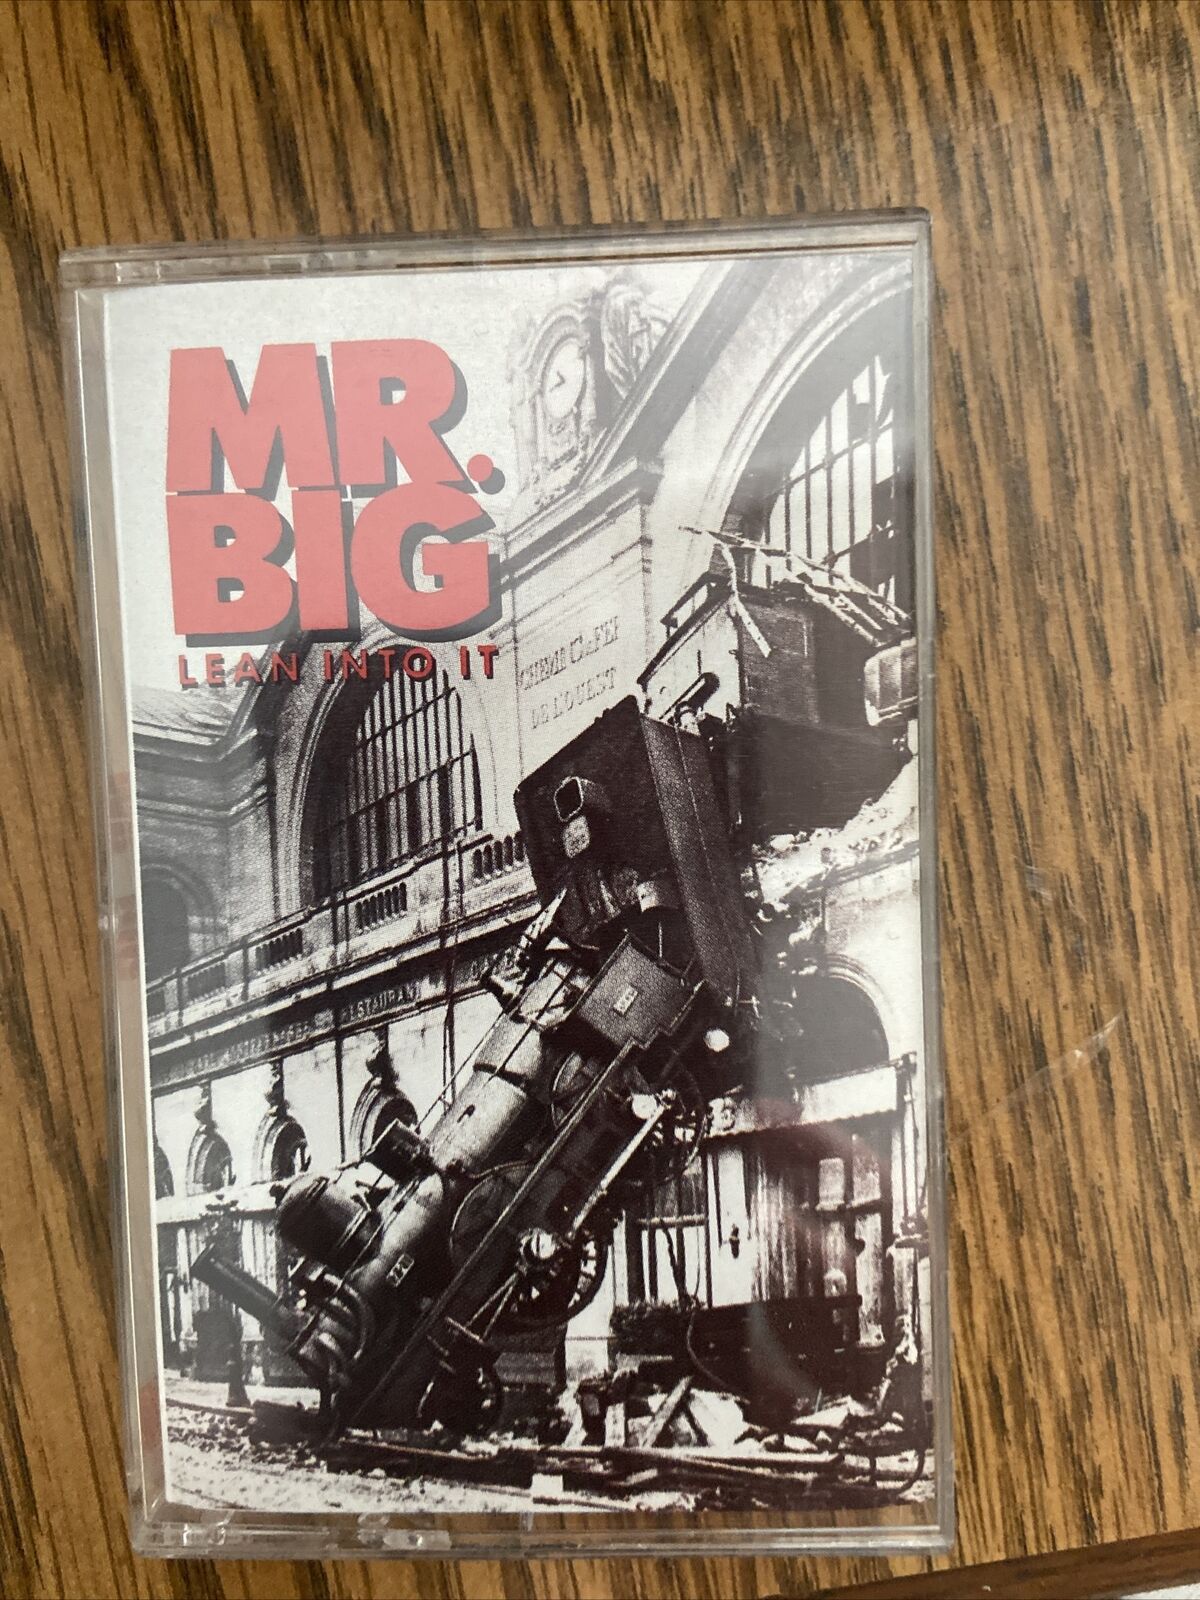 Vintage Mr. Big - Lean Into It 1991 Audio Cassette Tape